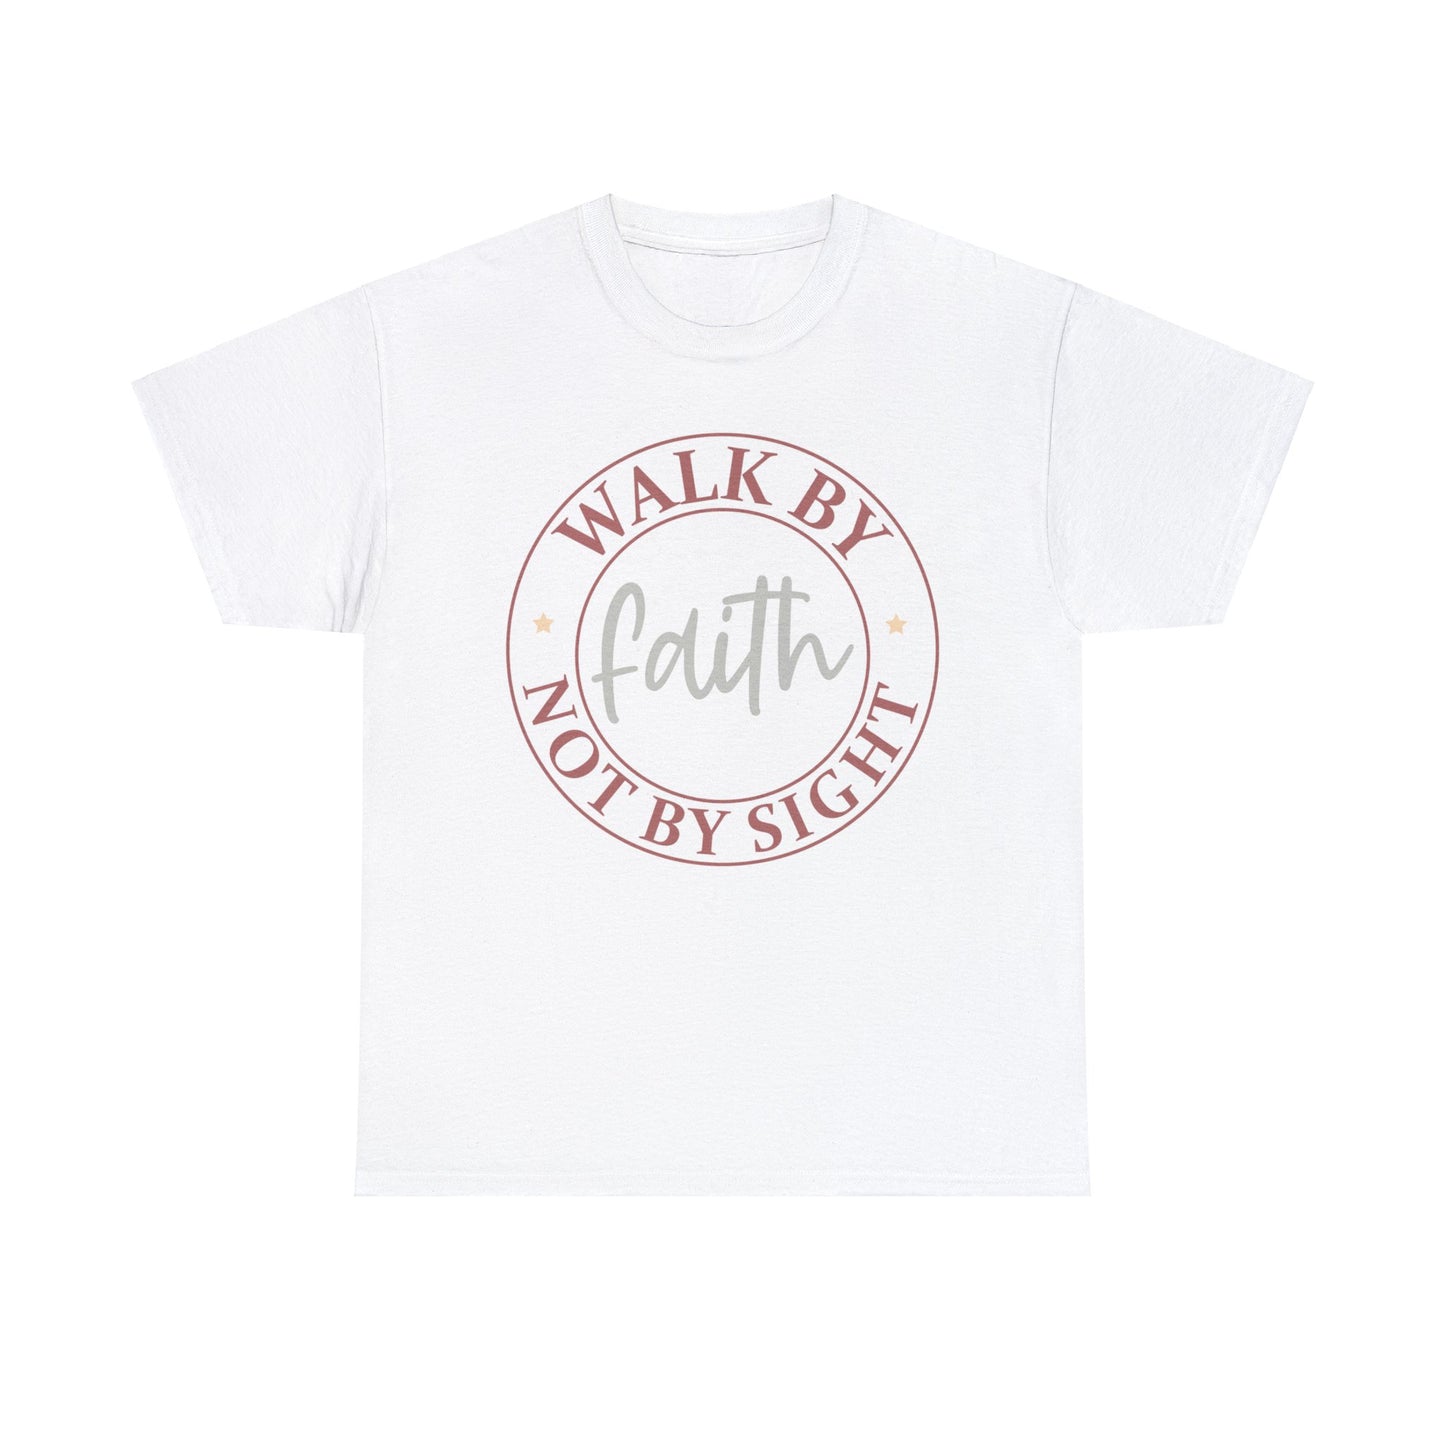 Walk By Faith Not Sight Shirt, Christian Shirt, Religious Shirt, Faith Tee (Faith-9)